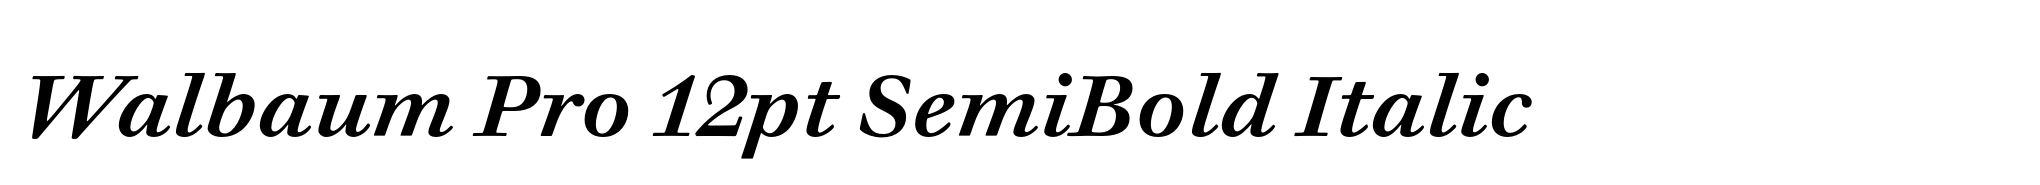 Walbaum Pro 12pt SemiBold Italic image